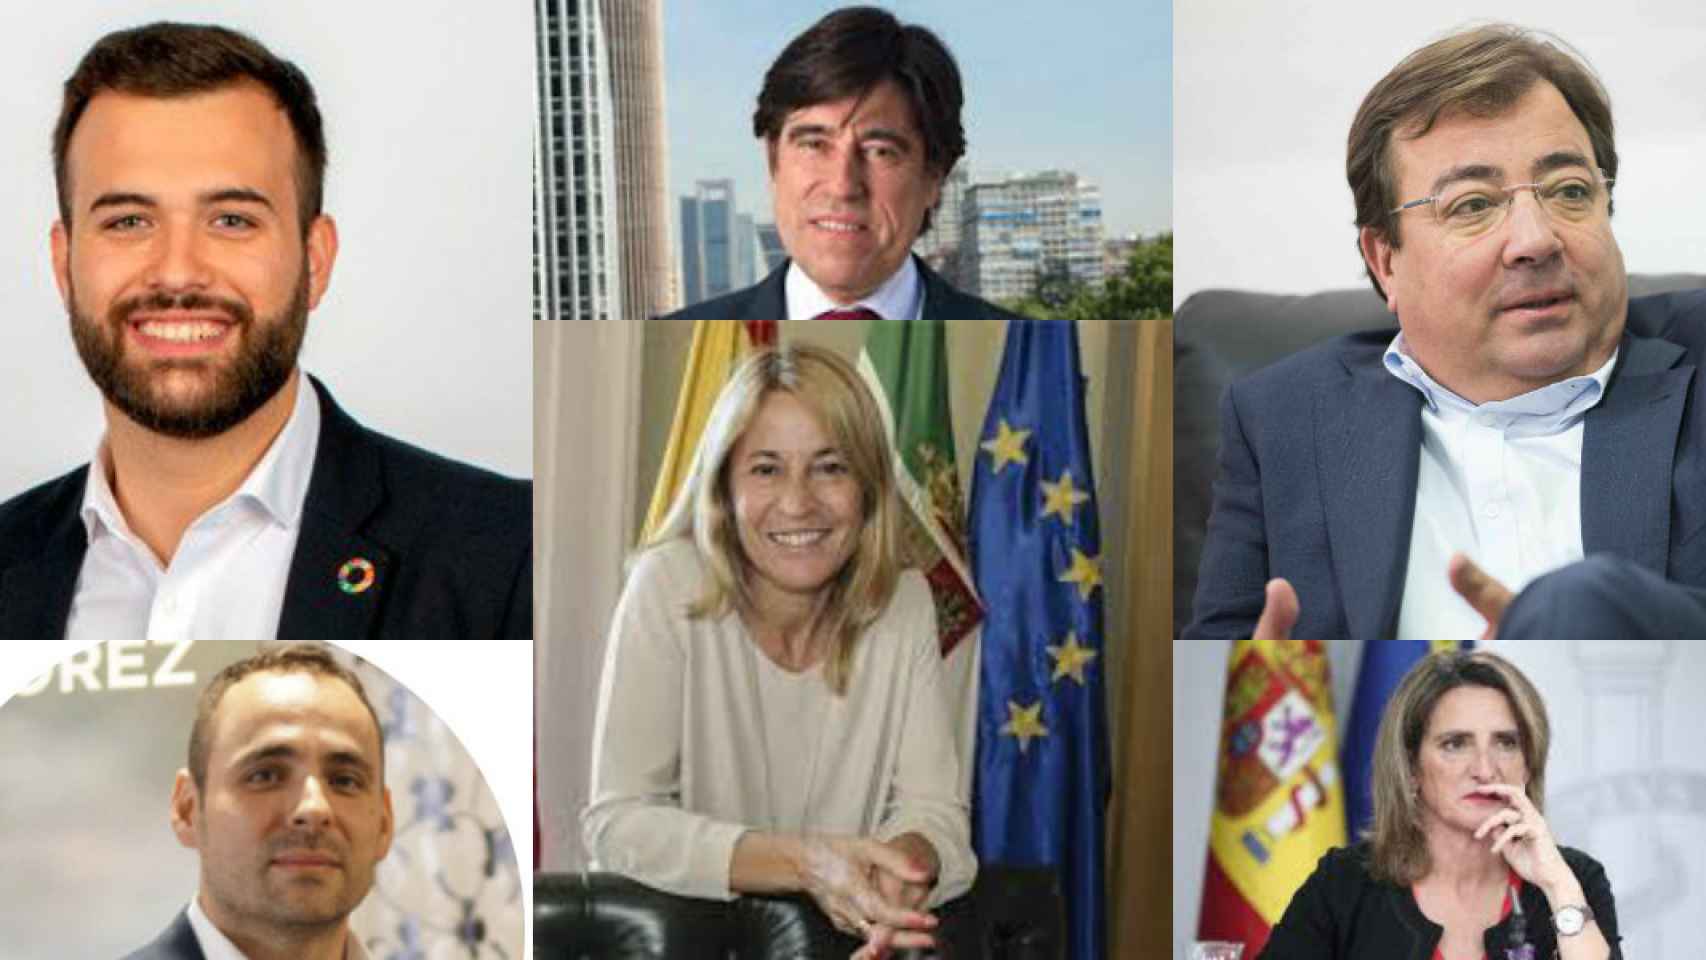 Luis Salaya, Manuel Manrique, Guillermo Fernández Vara, David Valls, Elena Nevado y Teresa Ribera.